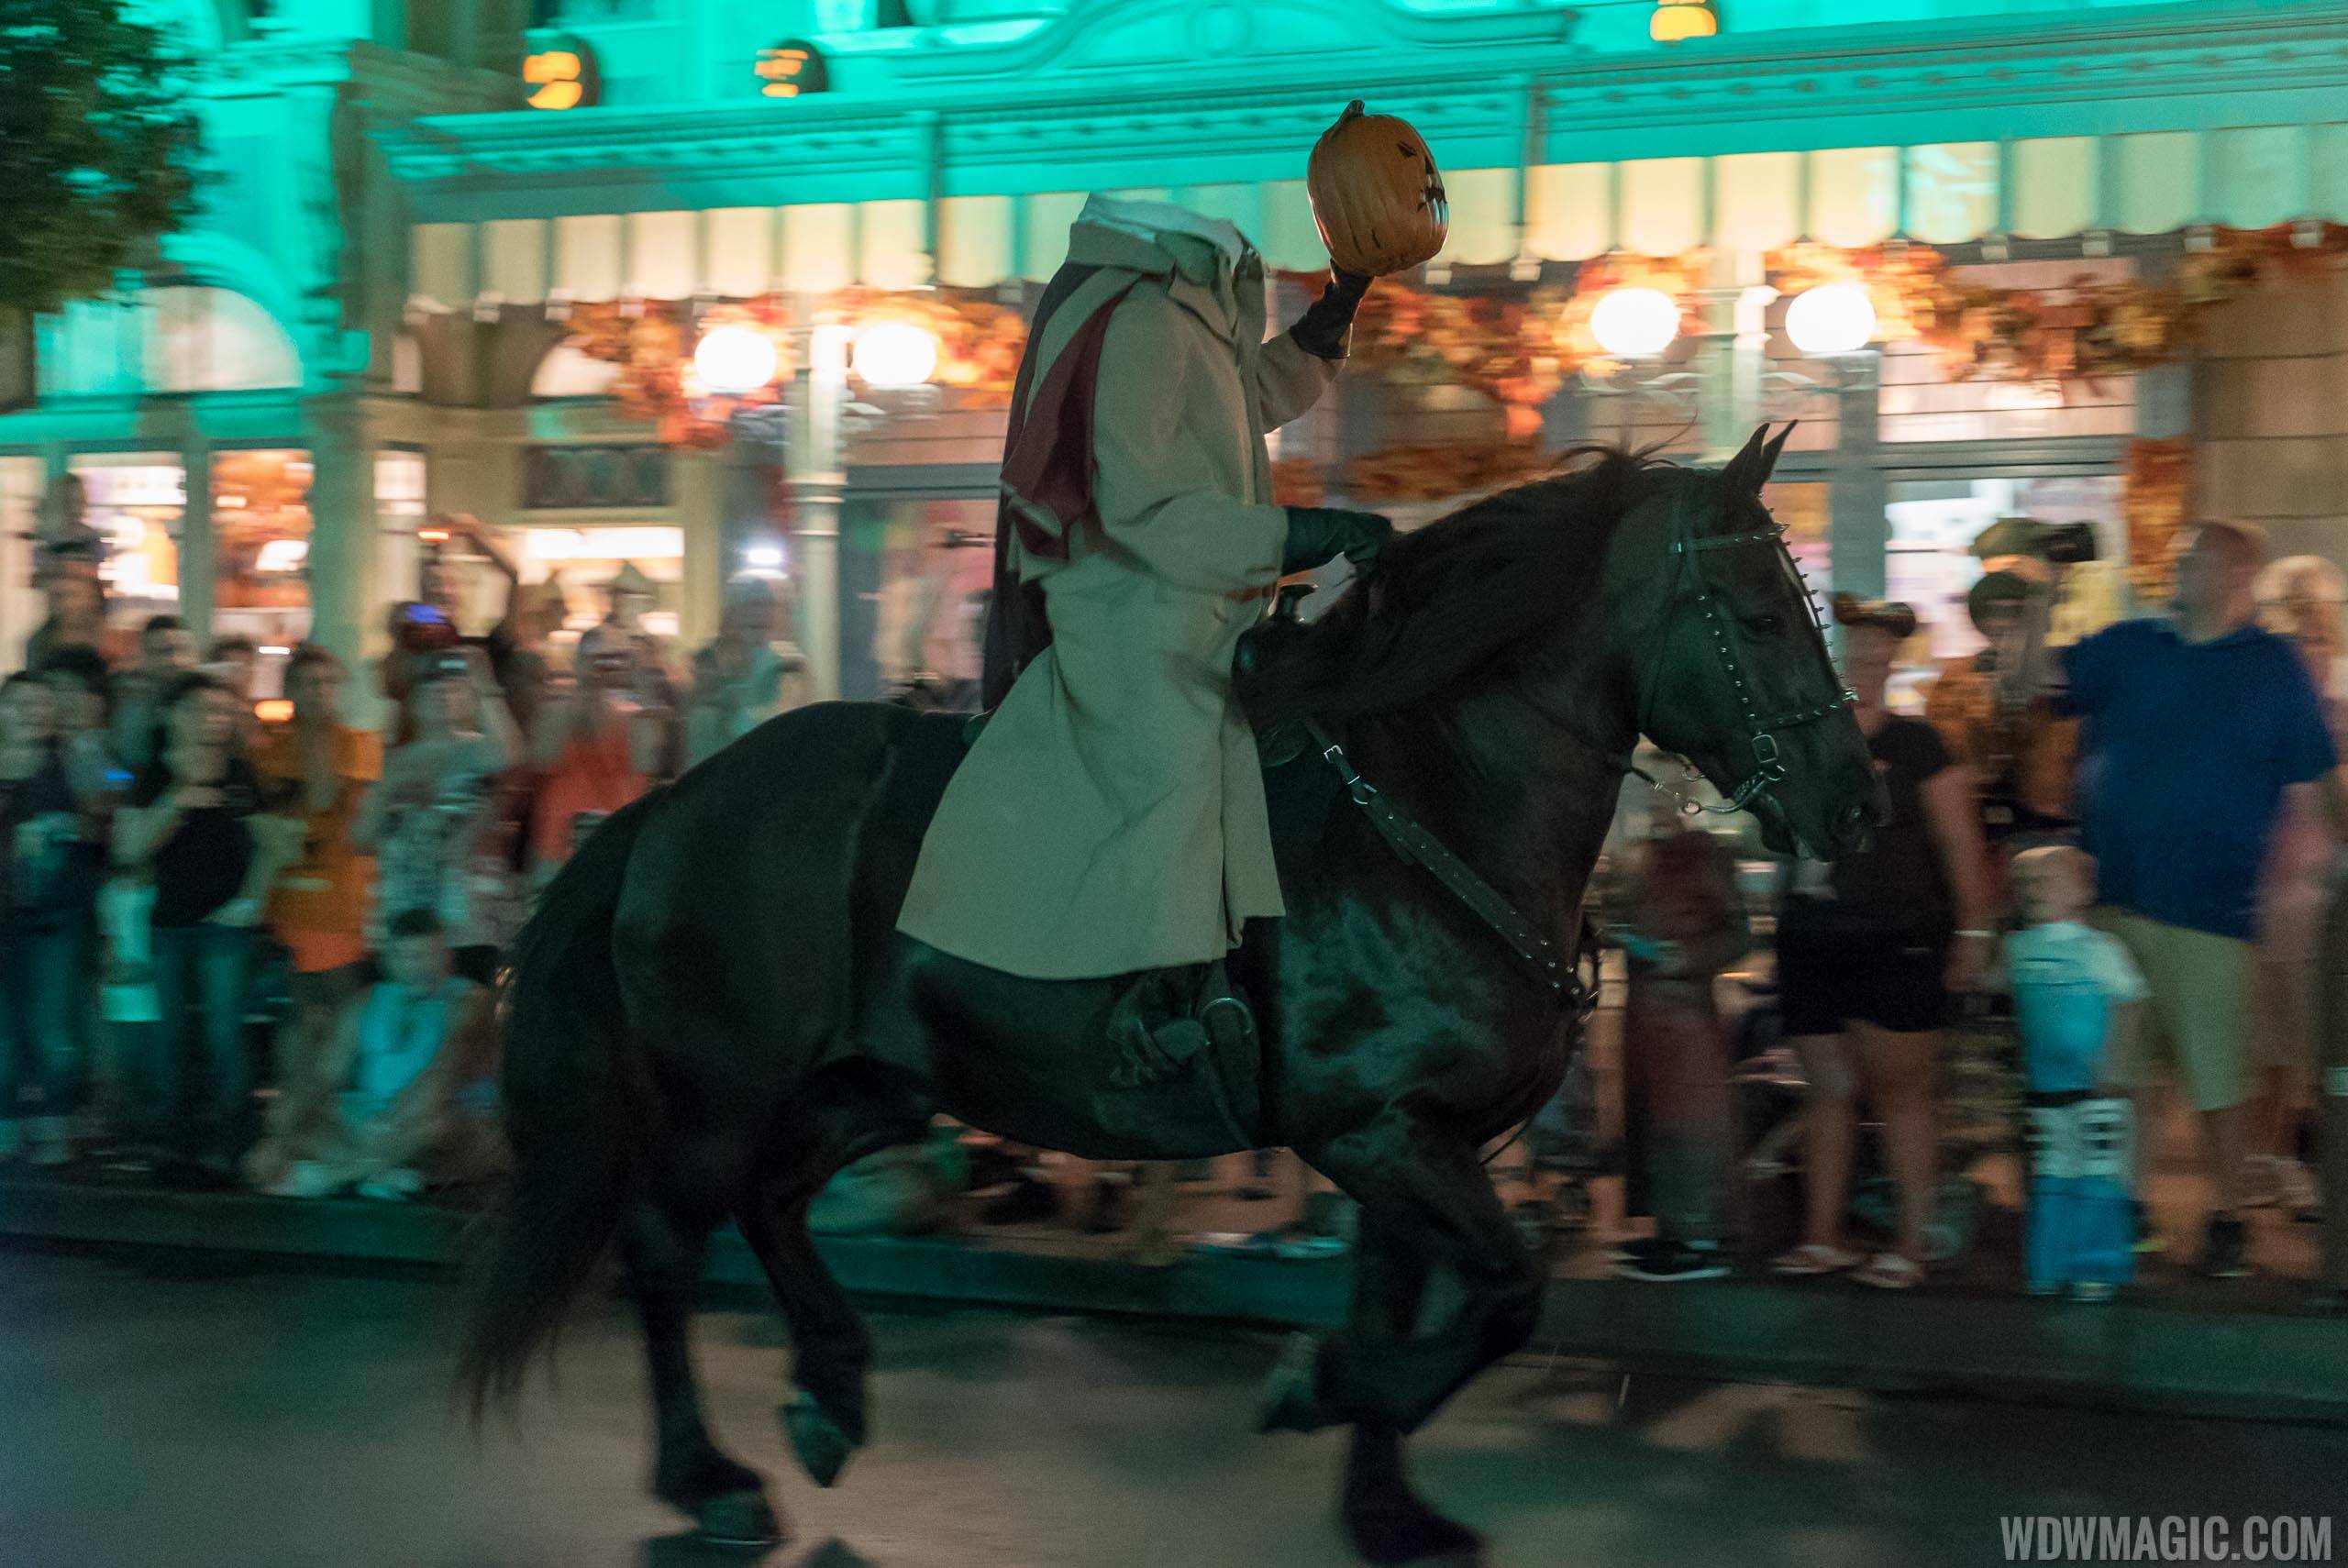 The Headless Horseman rides through the Magic Kingdom